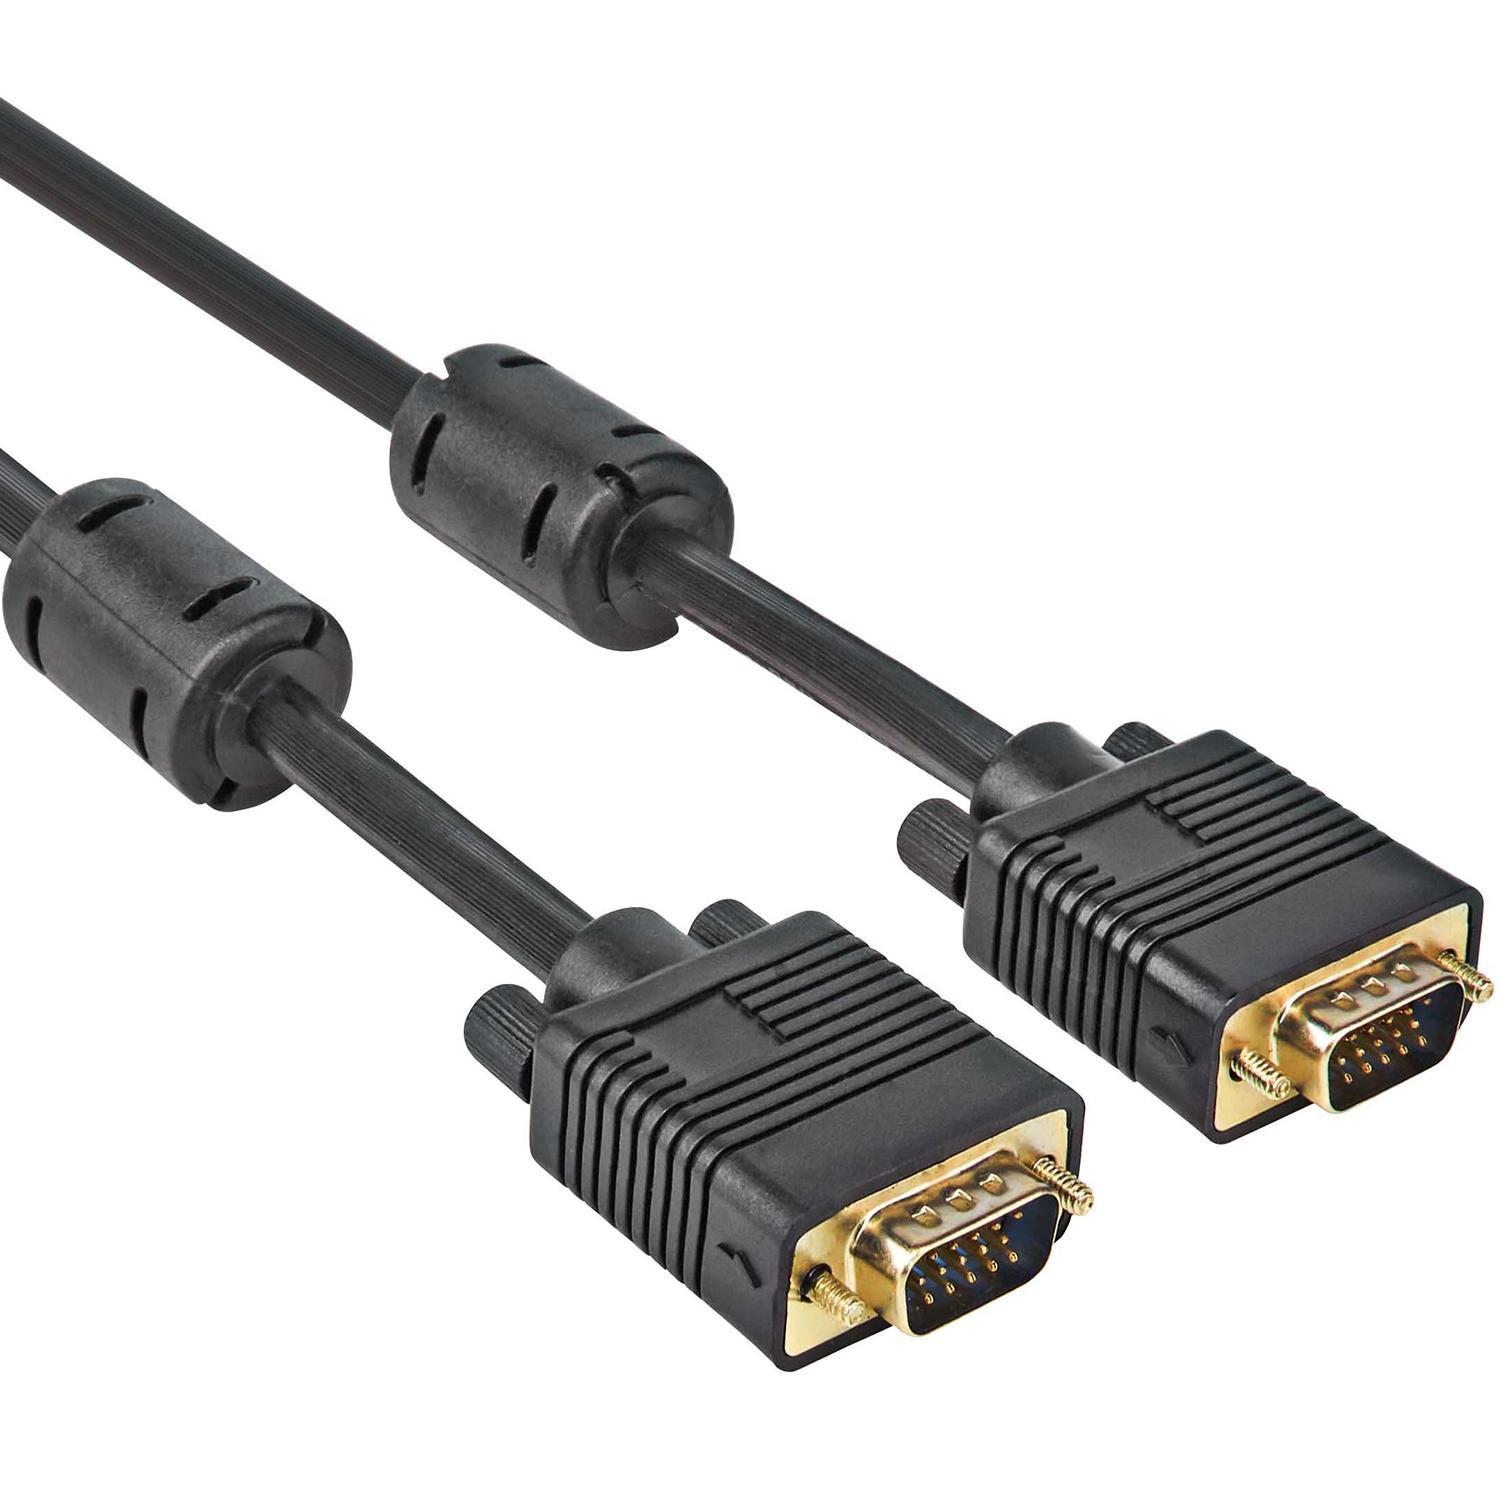 VGA kabel - 1 meter